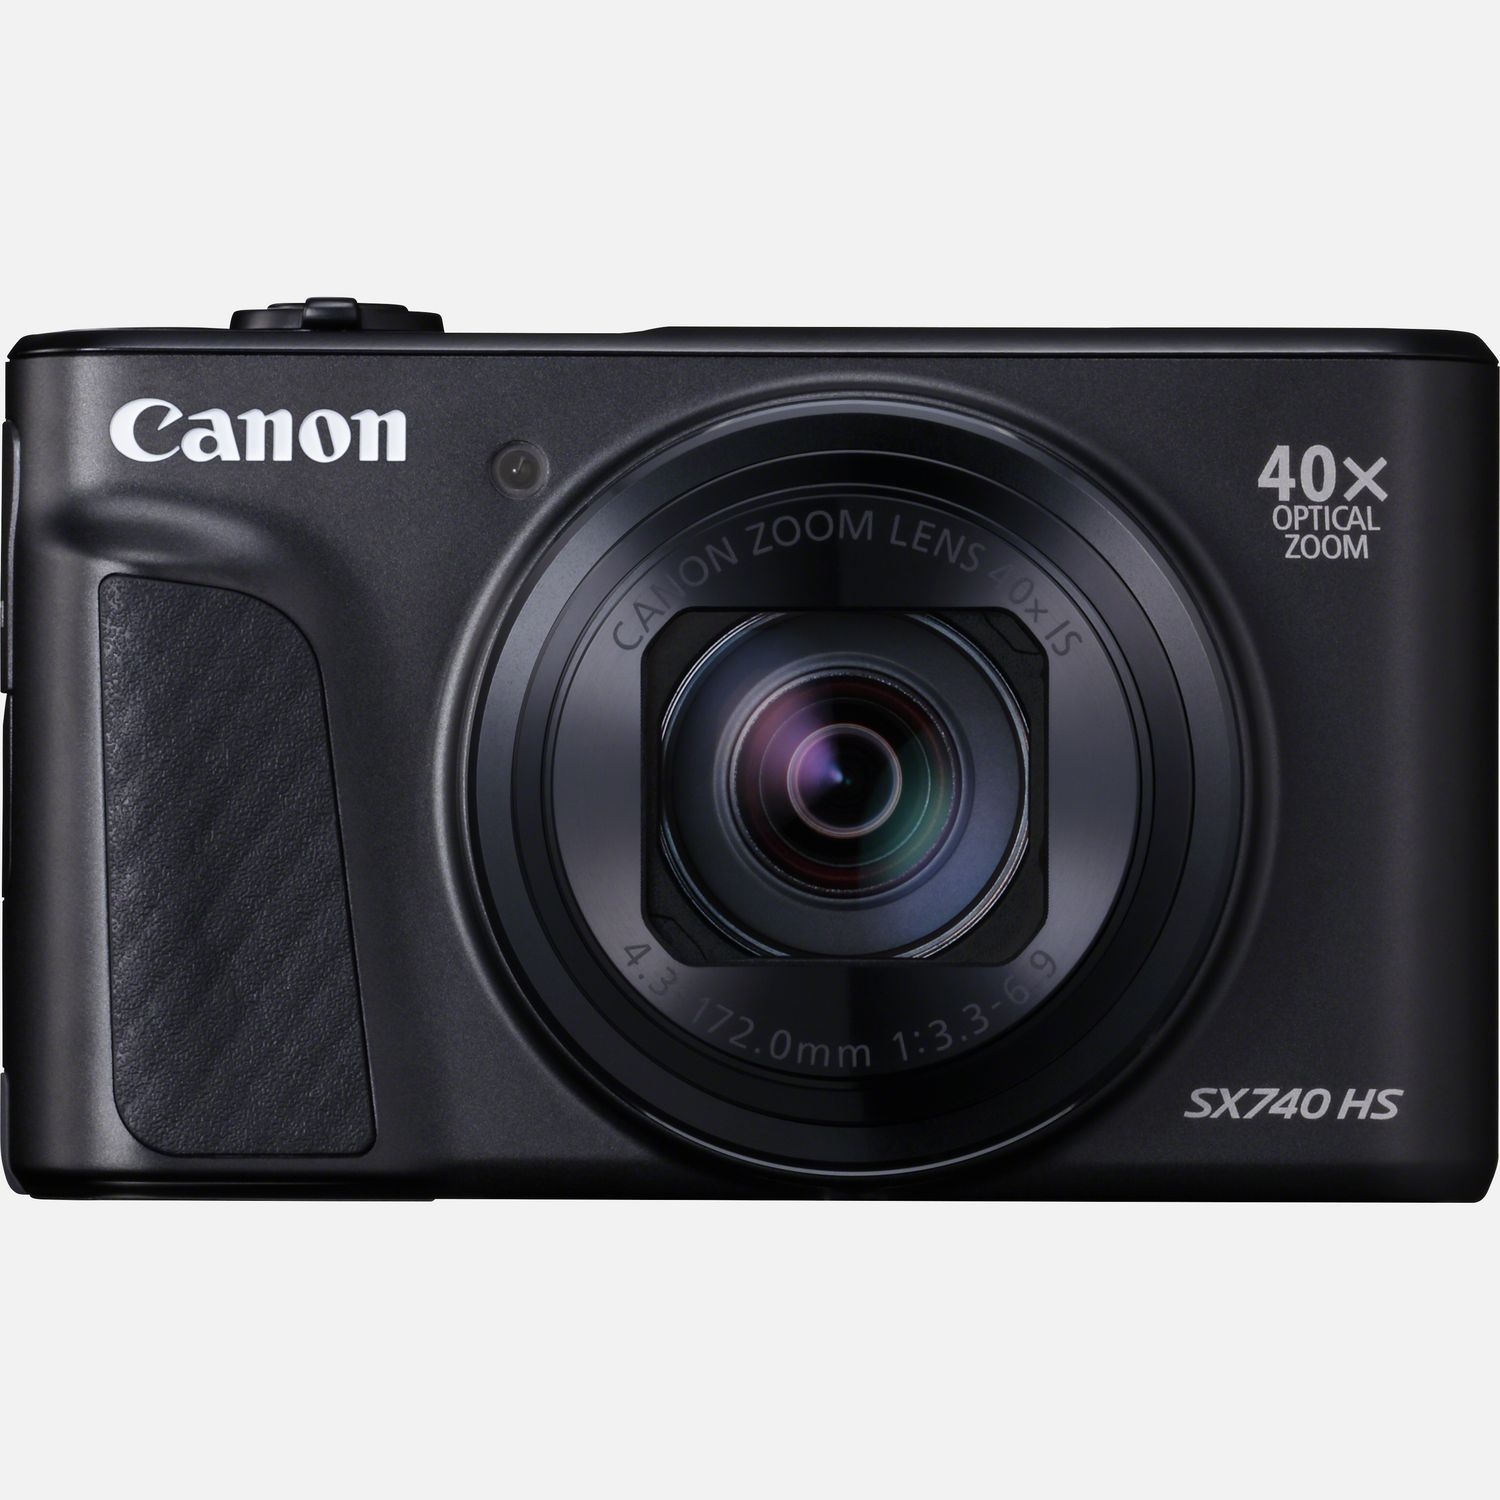 Canon Powershot Sx740 Hs Fotocamera Digitale Compatta: Nero